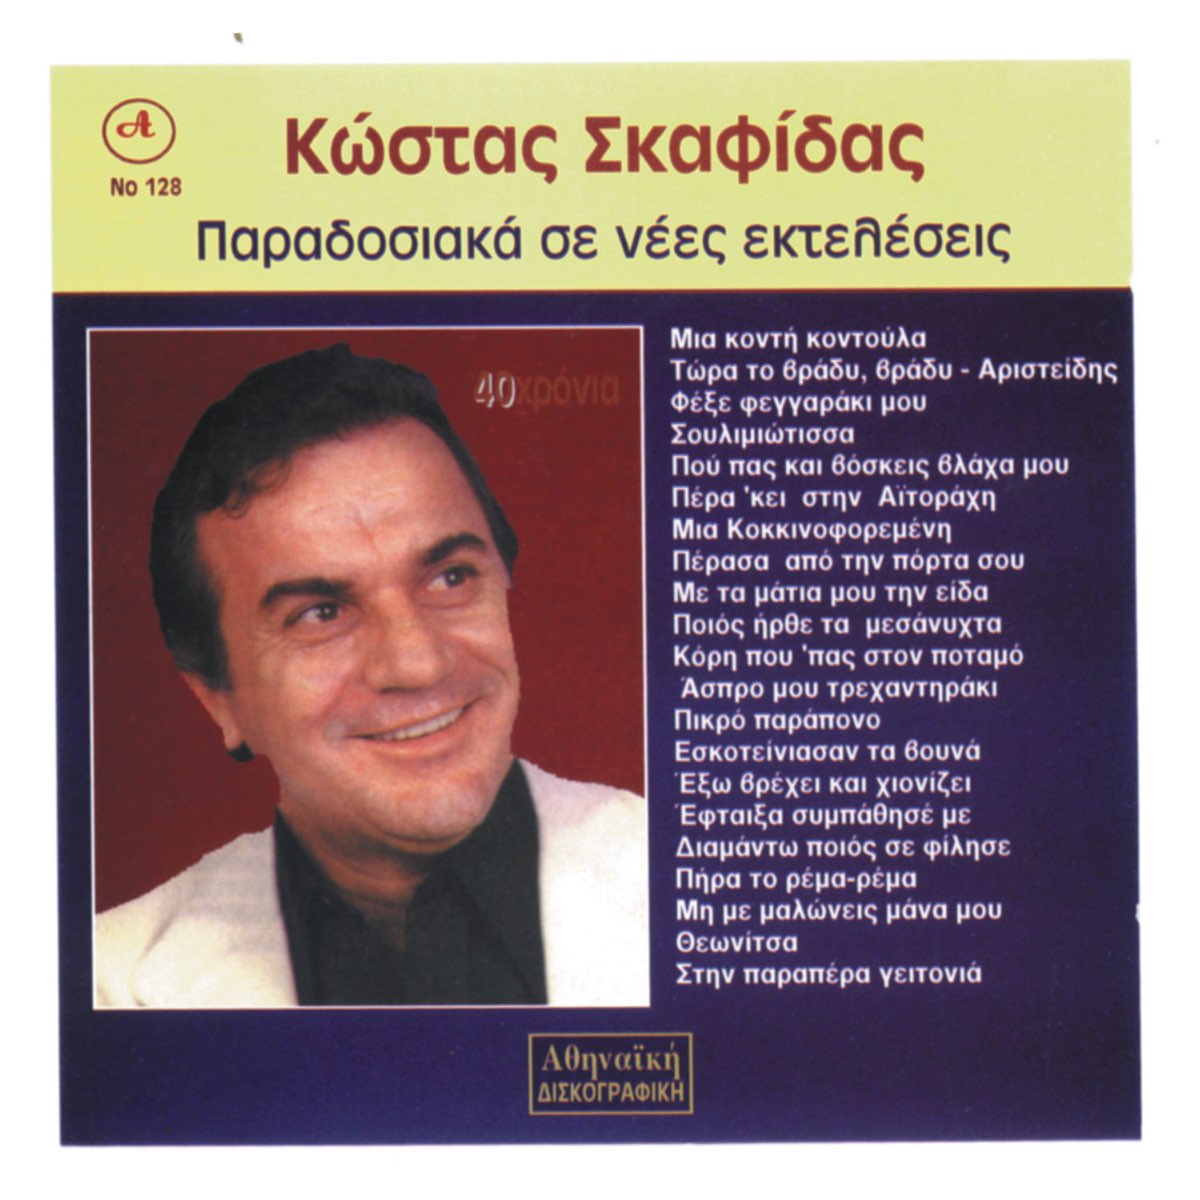 40 Xronia Kostas Skafidas - Album by Kostas Skafidas - Apple Music